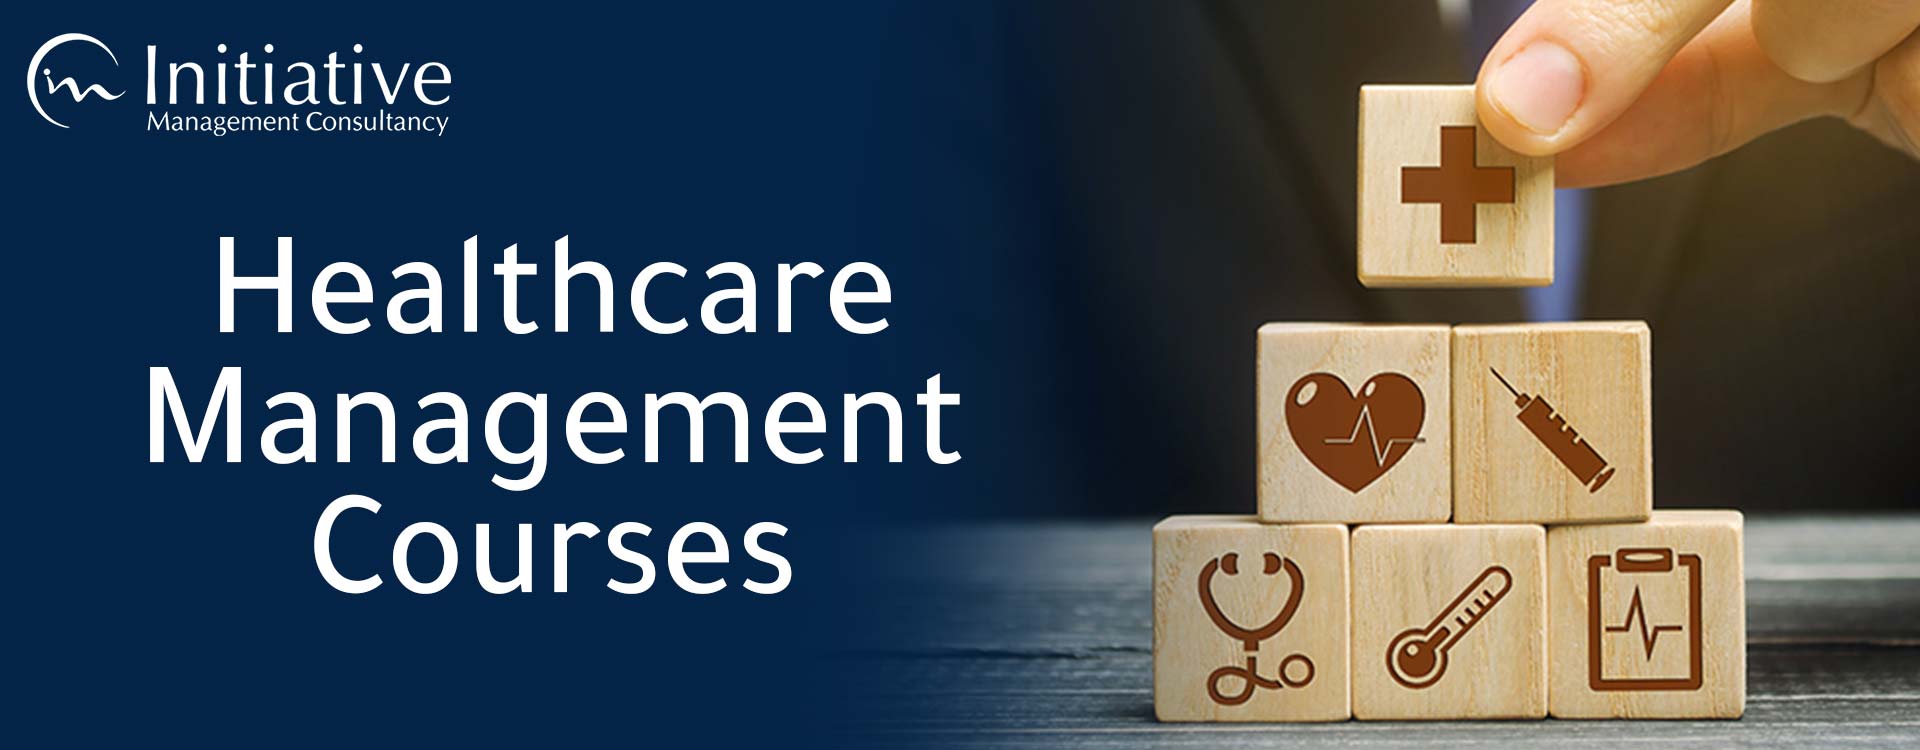 Healthcare Management Courses